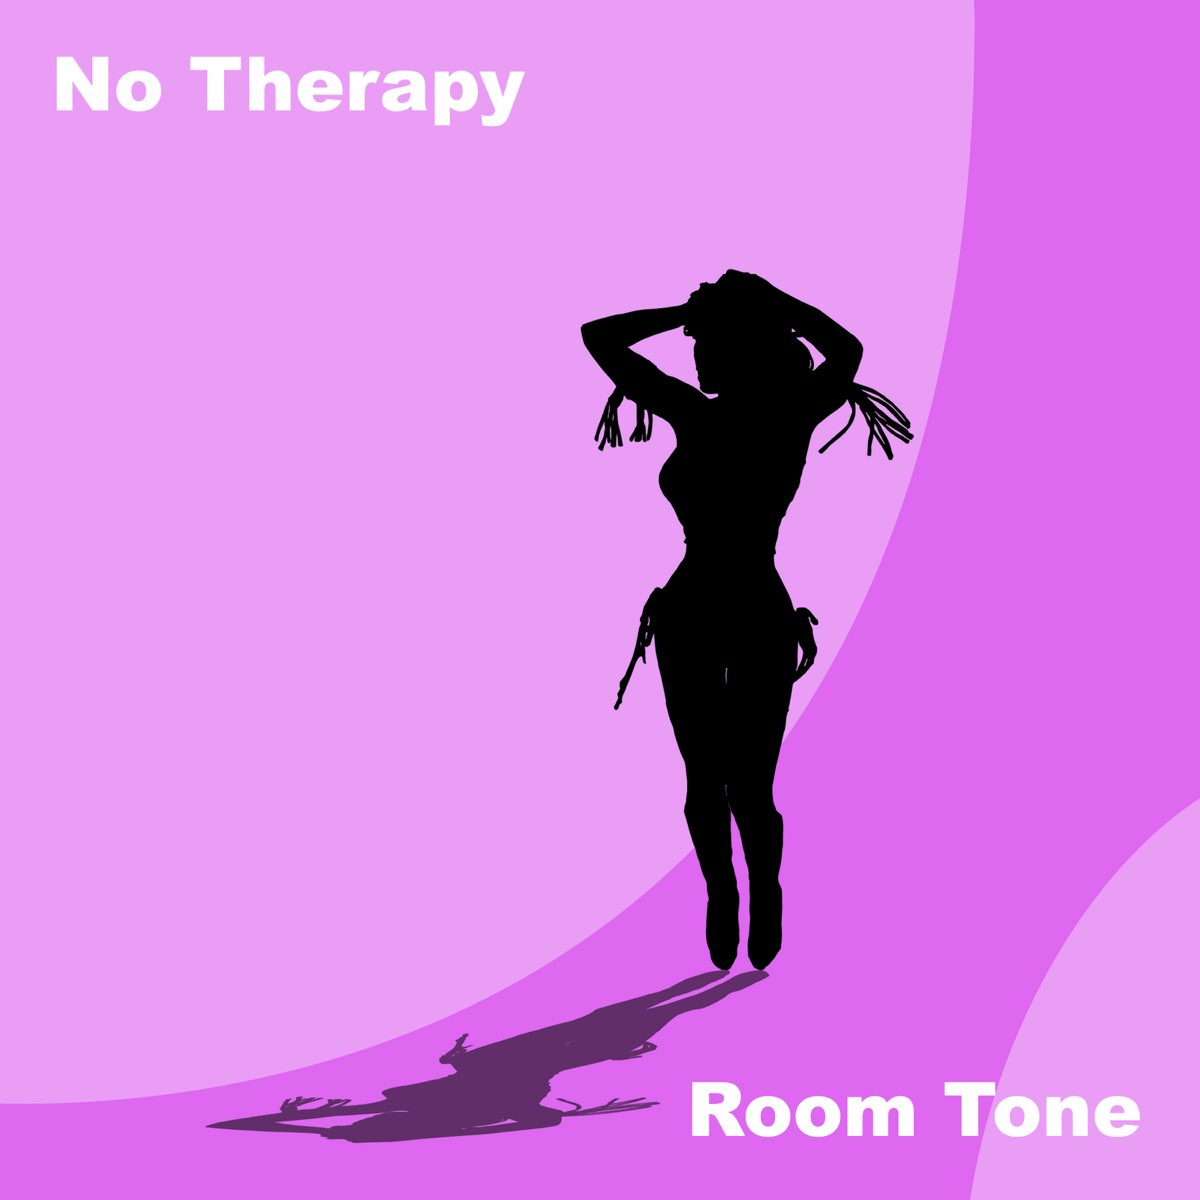 No Tone. No Tone - Life is Love. Room tone